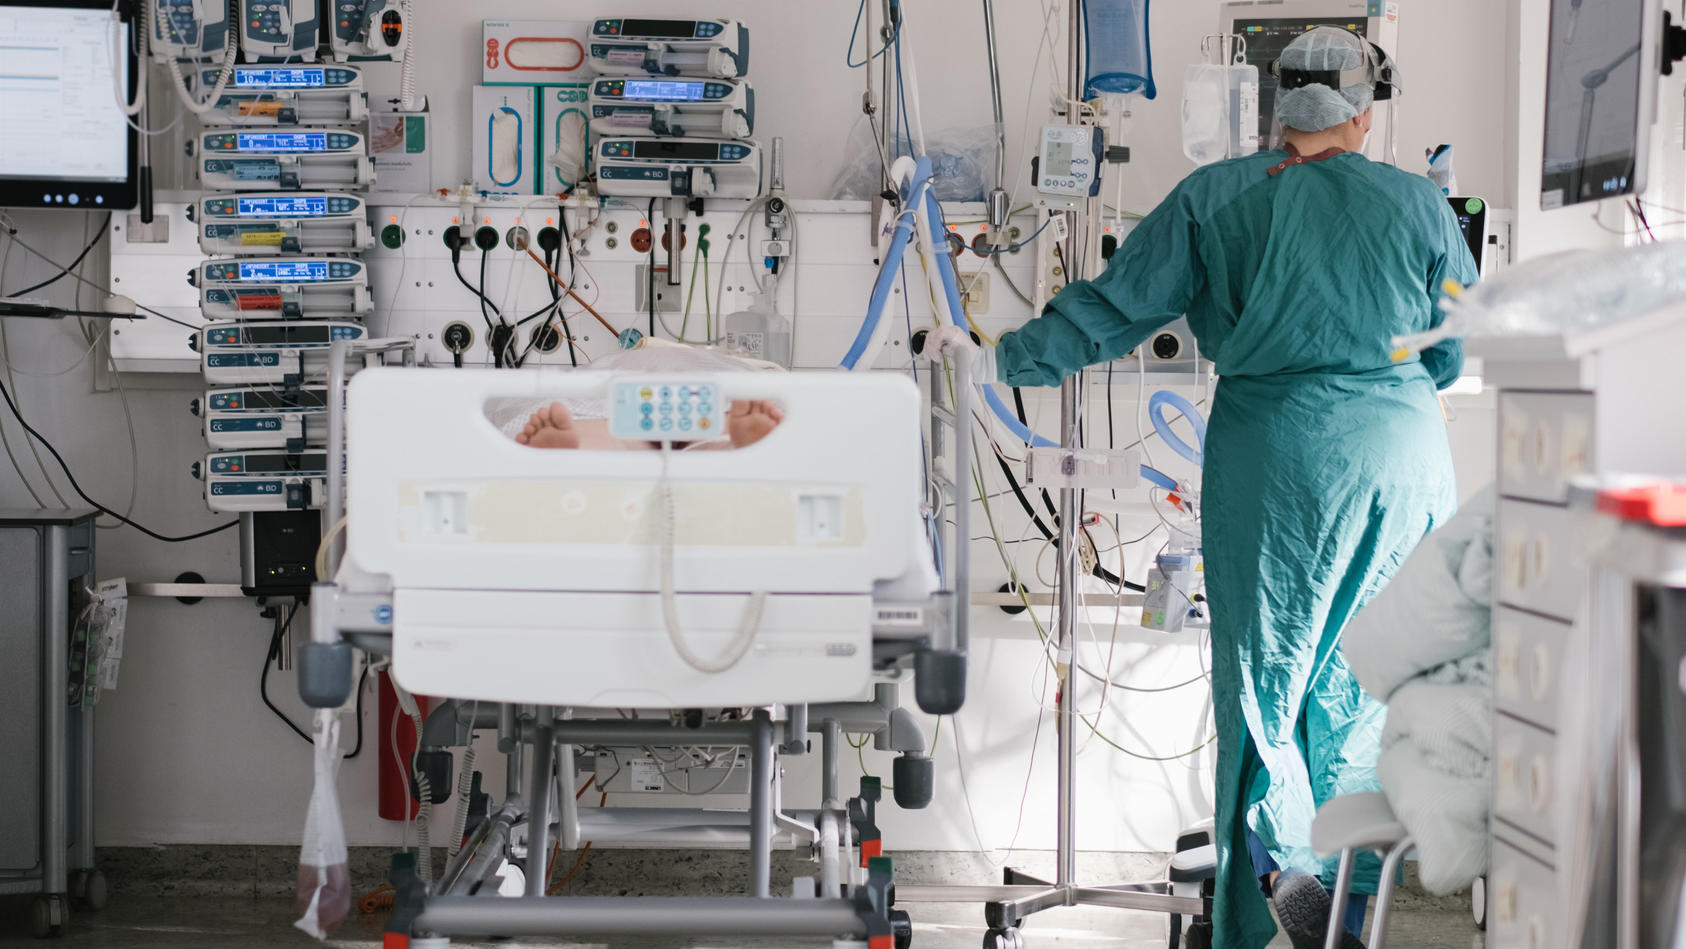 ILLUSTRATION - 20.04.2021, Niedersachsen, Braunschweig: Eine Intensivpflegerin versorgt auf der Intensivstation einen an Covid-19 erkrankten Patienten. (zu dpa: "Krankenhauspatienten sollen nicht mehr einsam sterben") Foto: Ole Spata/dpa +++ dpa-Bild